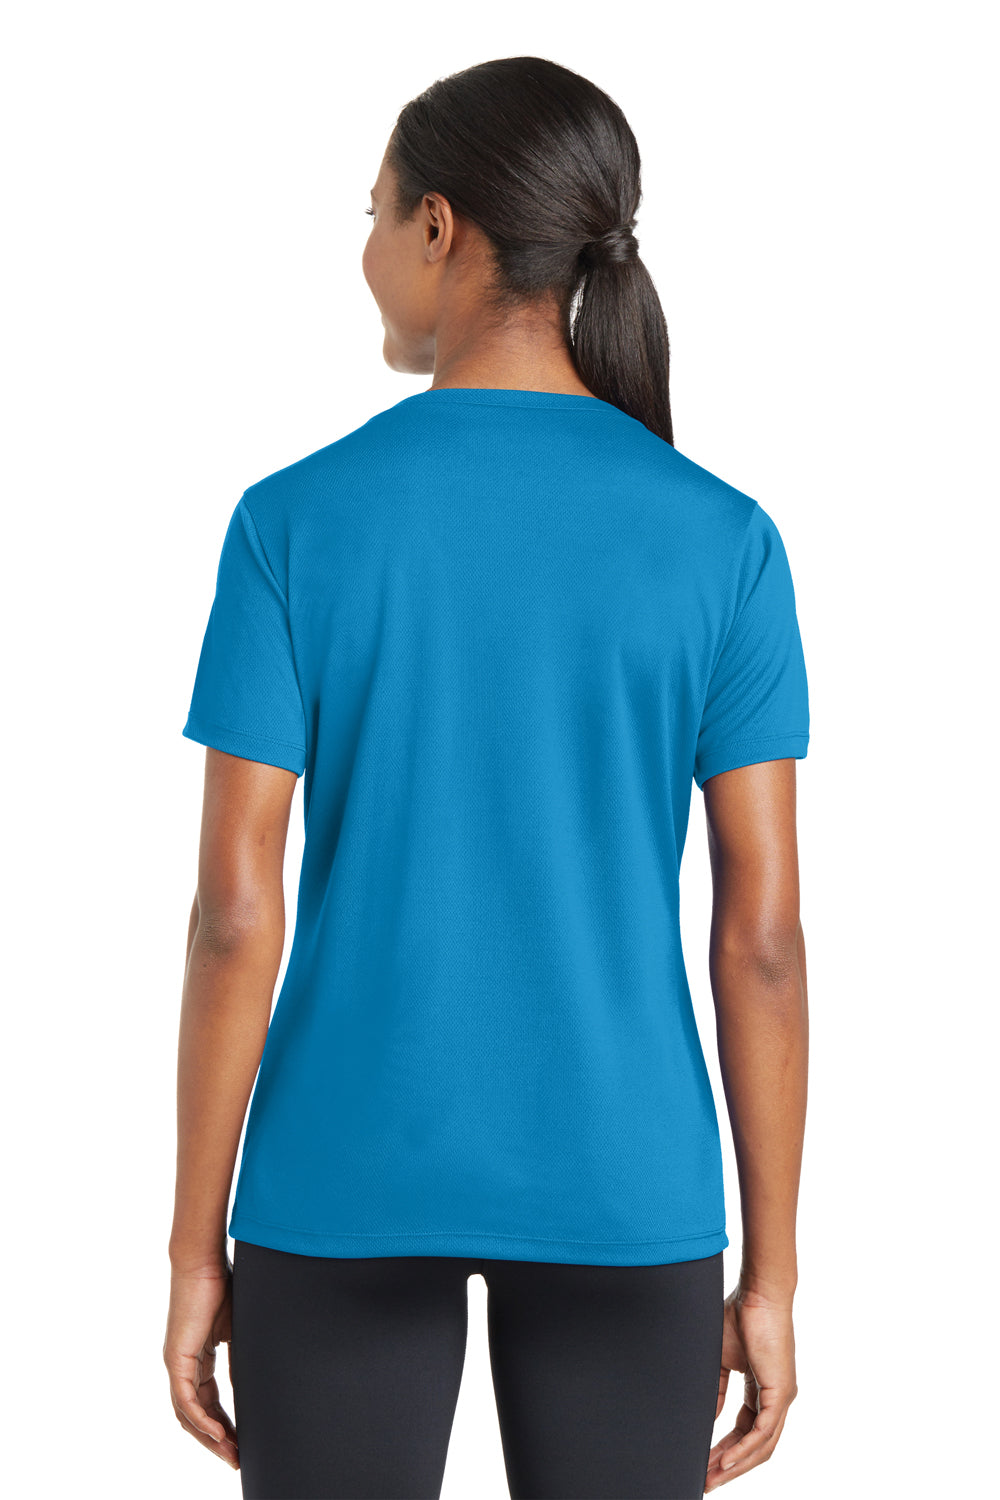 Sport-Tek LST340 Womens RacerMesh Moisture Wicking Short Sleeve V-Neck T-Shirt Pond Blue Back